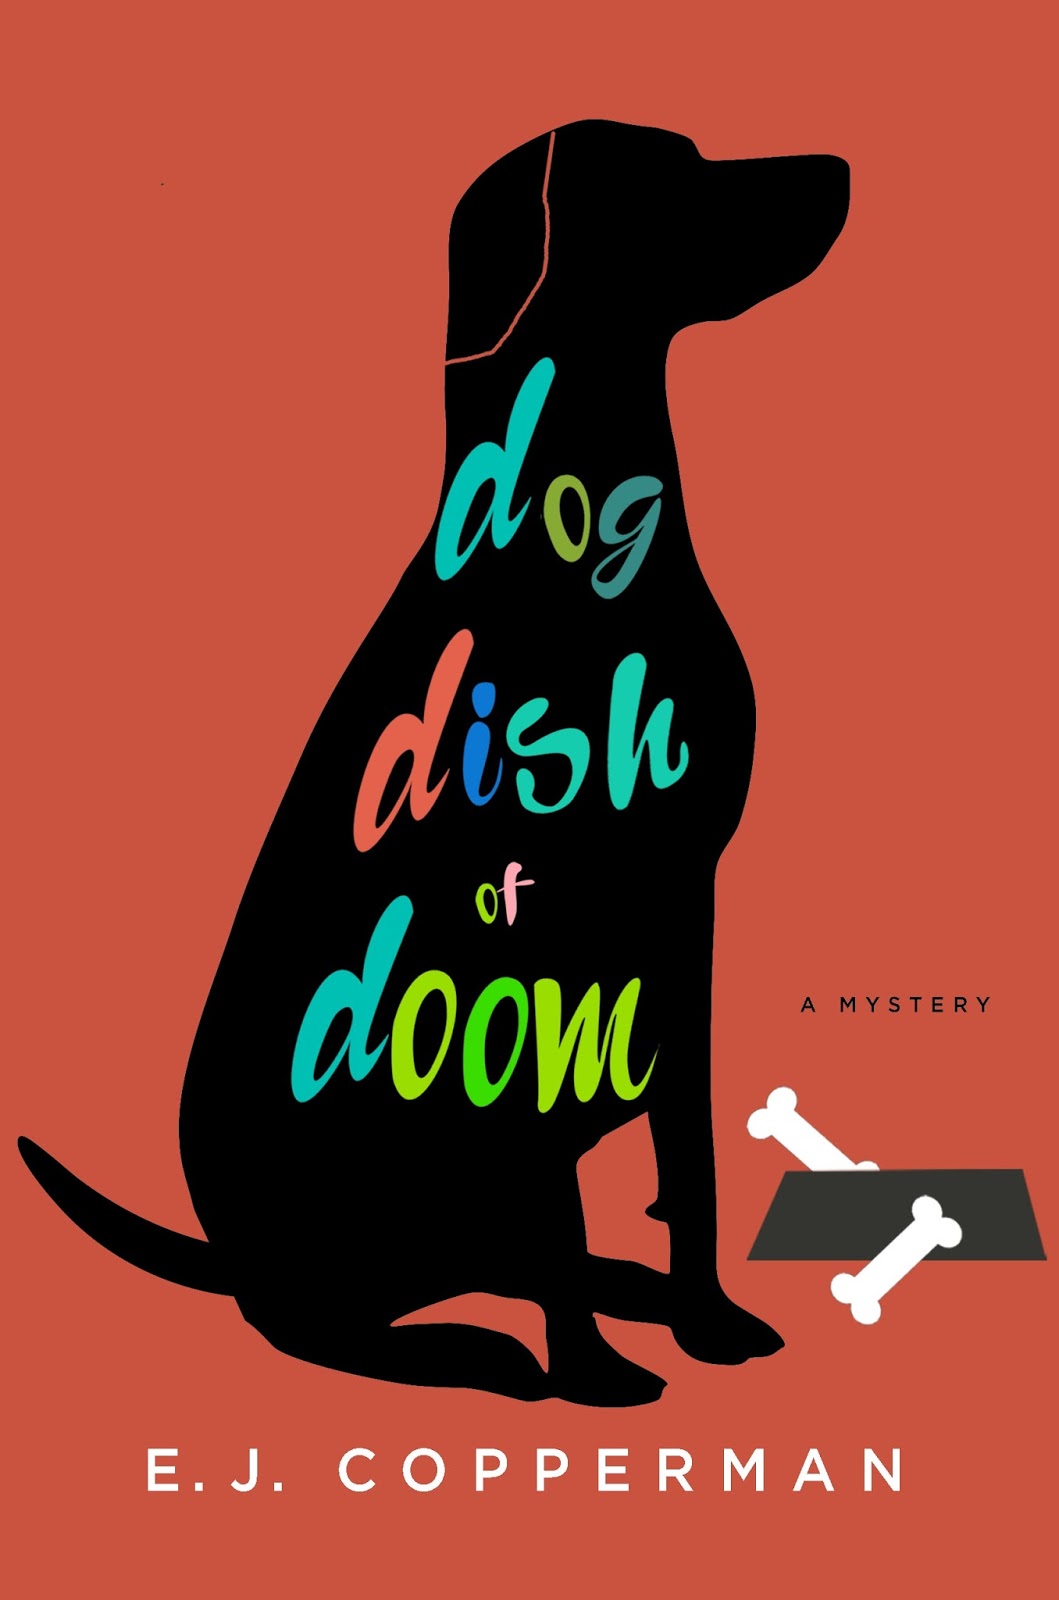 Dish dogs. Dog dish. Блюз черной собаки книга обложка. Waudog обложка.